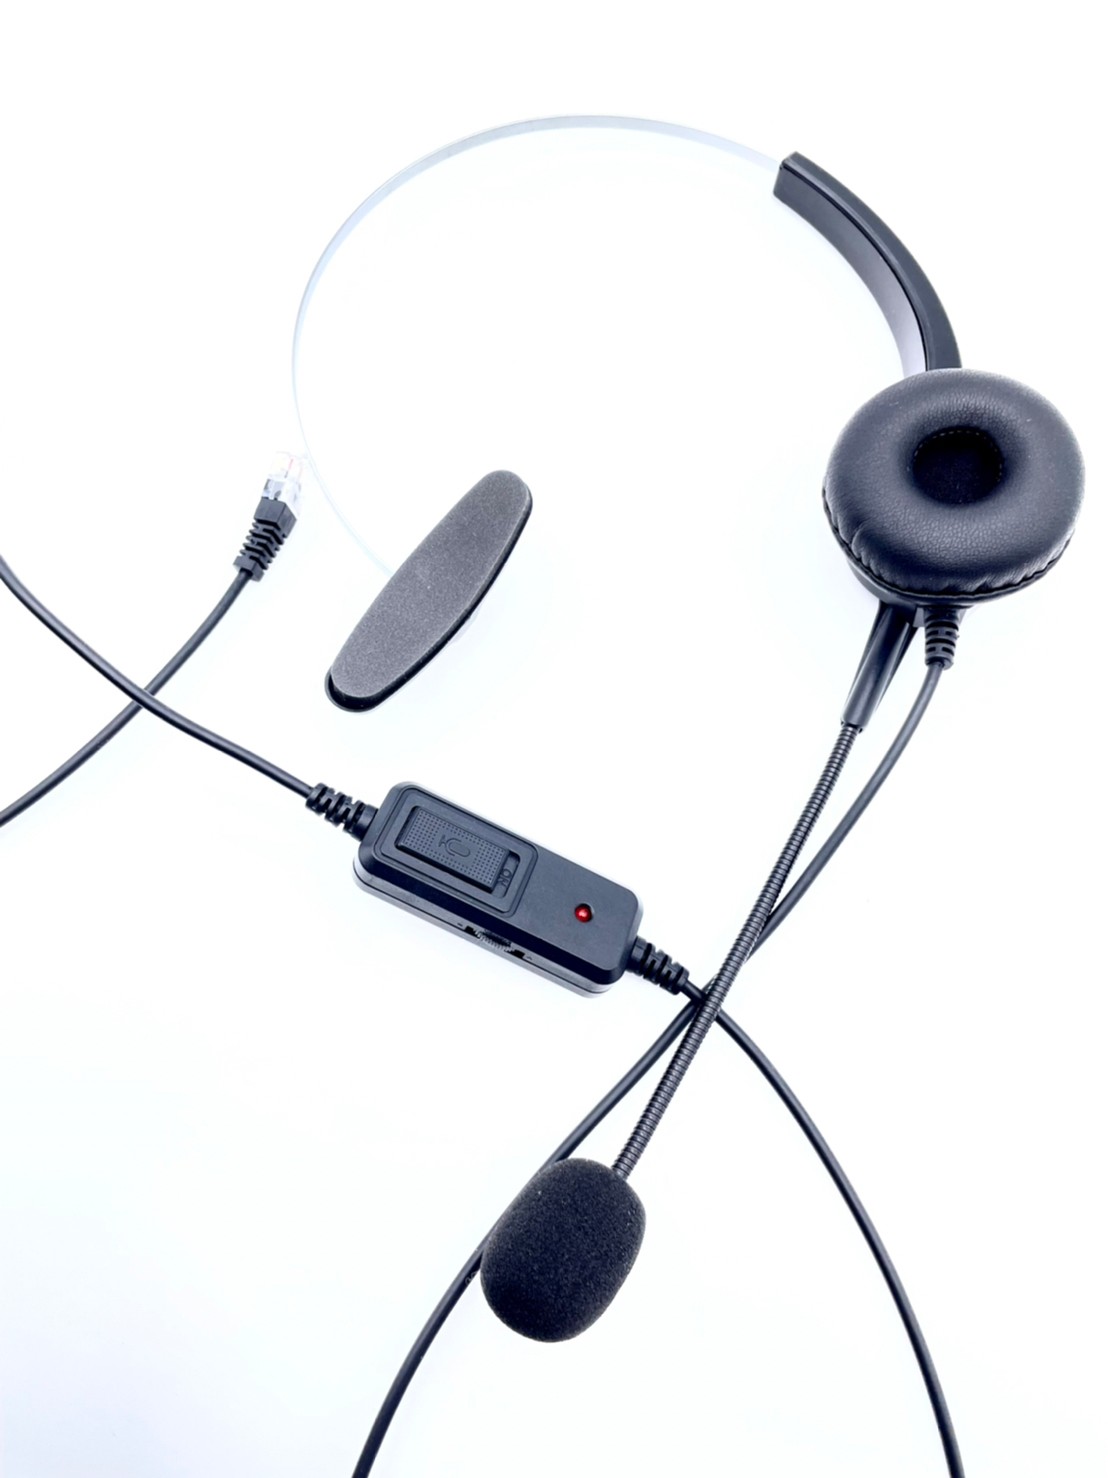 880元單耳耳機可調靜音功能 電話專用耳機麥克風HEADSET 瑞通 RS8012HME 另有 PANASONIC電話耳機 HION電話耳機 TONNET電話耳機